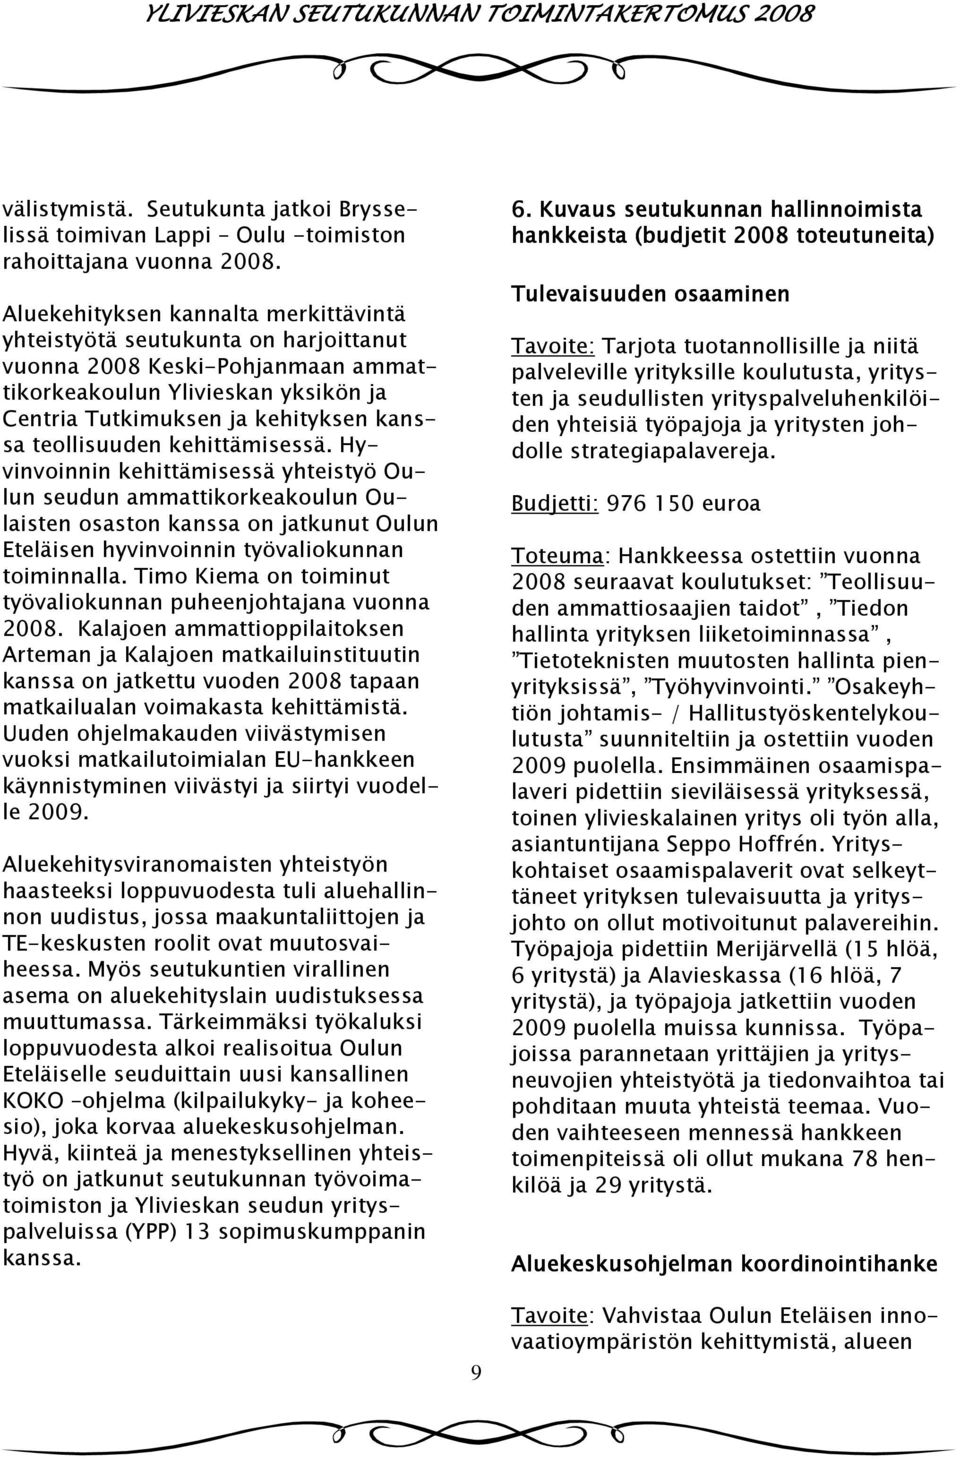 teollisuuden kehittämisessä. Hyvinvoinnin kehittämisessä yhteistyö Oulun seudun ammattikorkeakoulun Oulaisten osaston kanssa on jatkunut Oulun Eteläisen hyvinvoinnin työvaliokunnan toiminnalla.